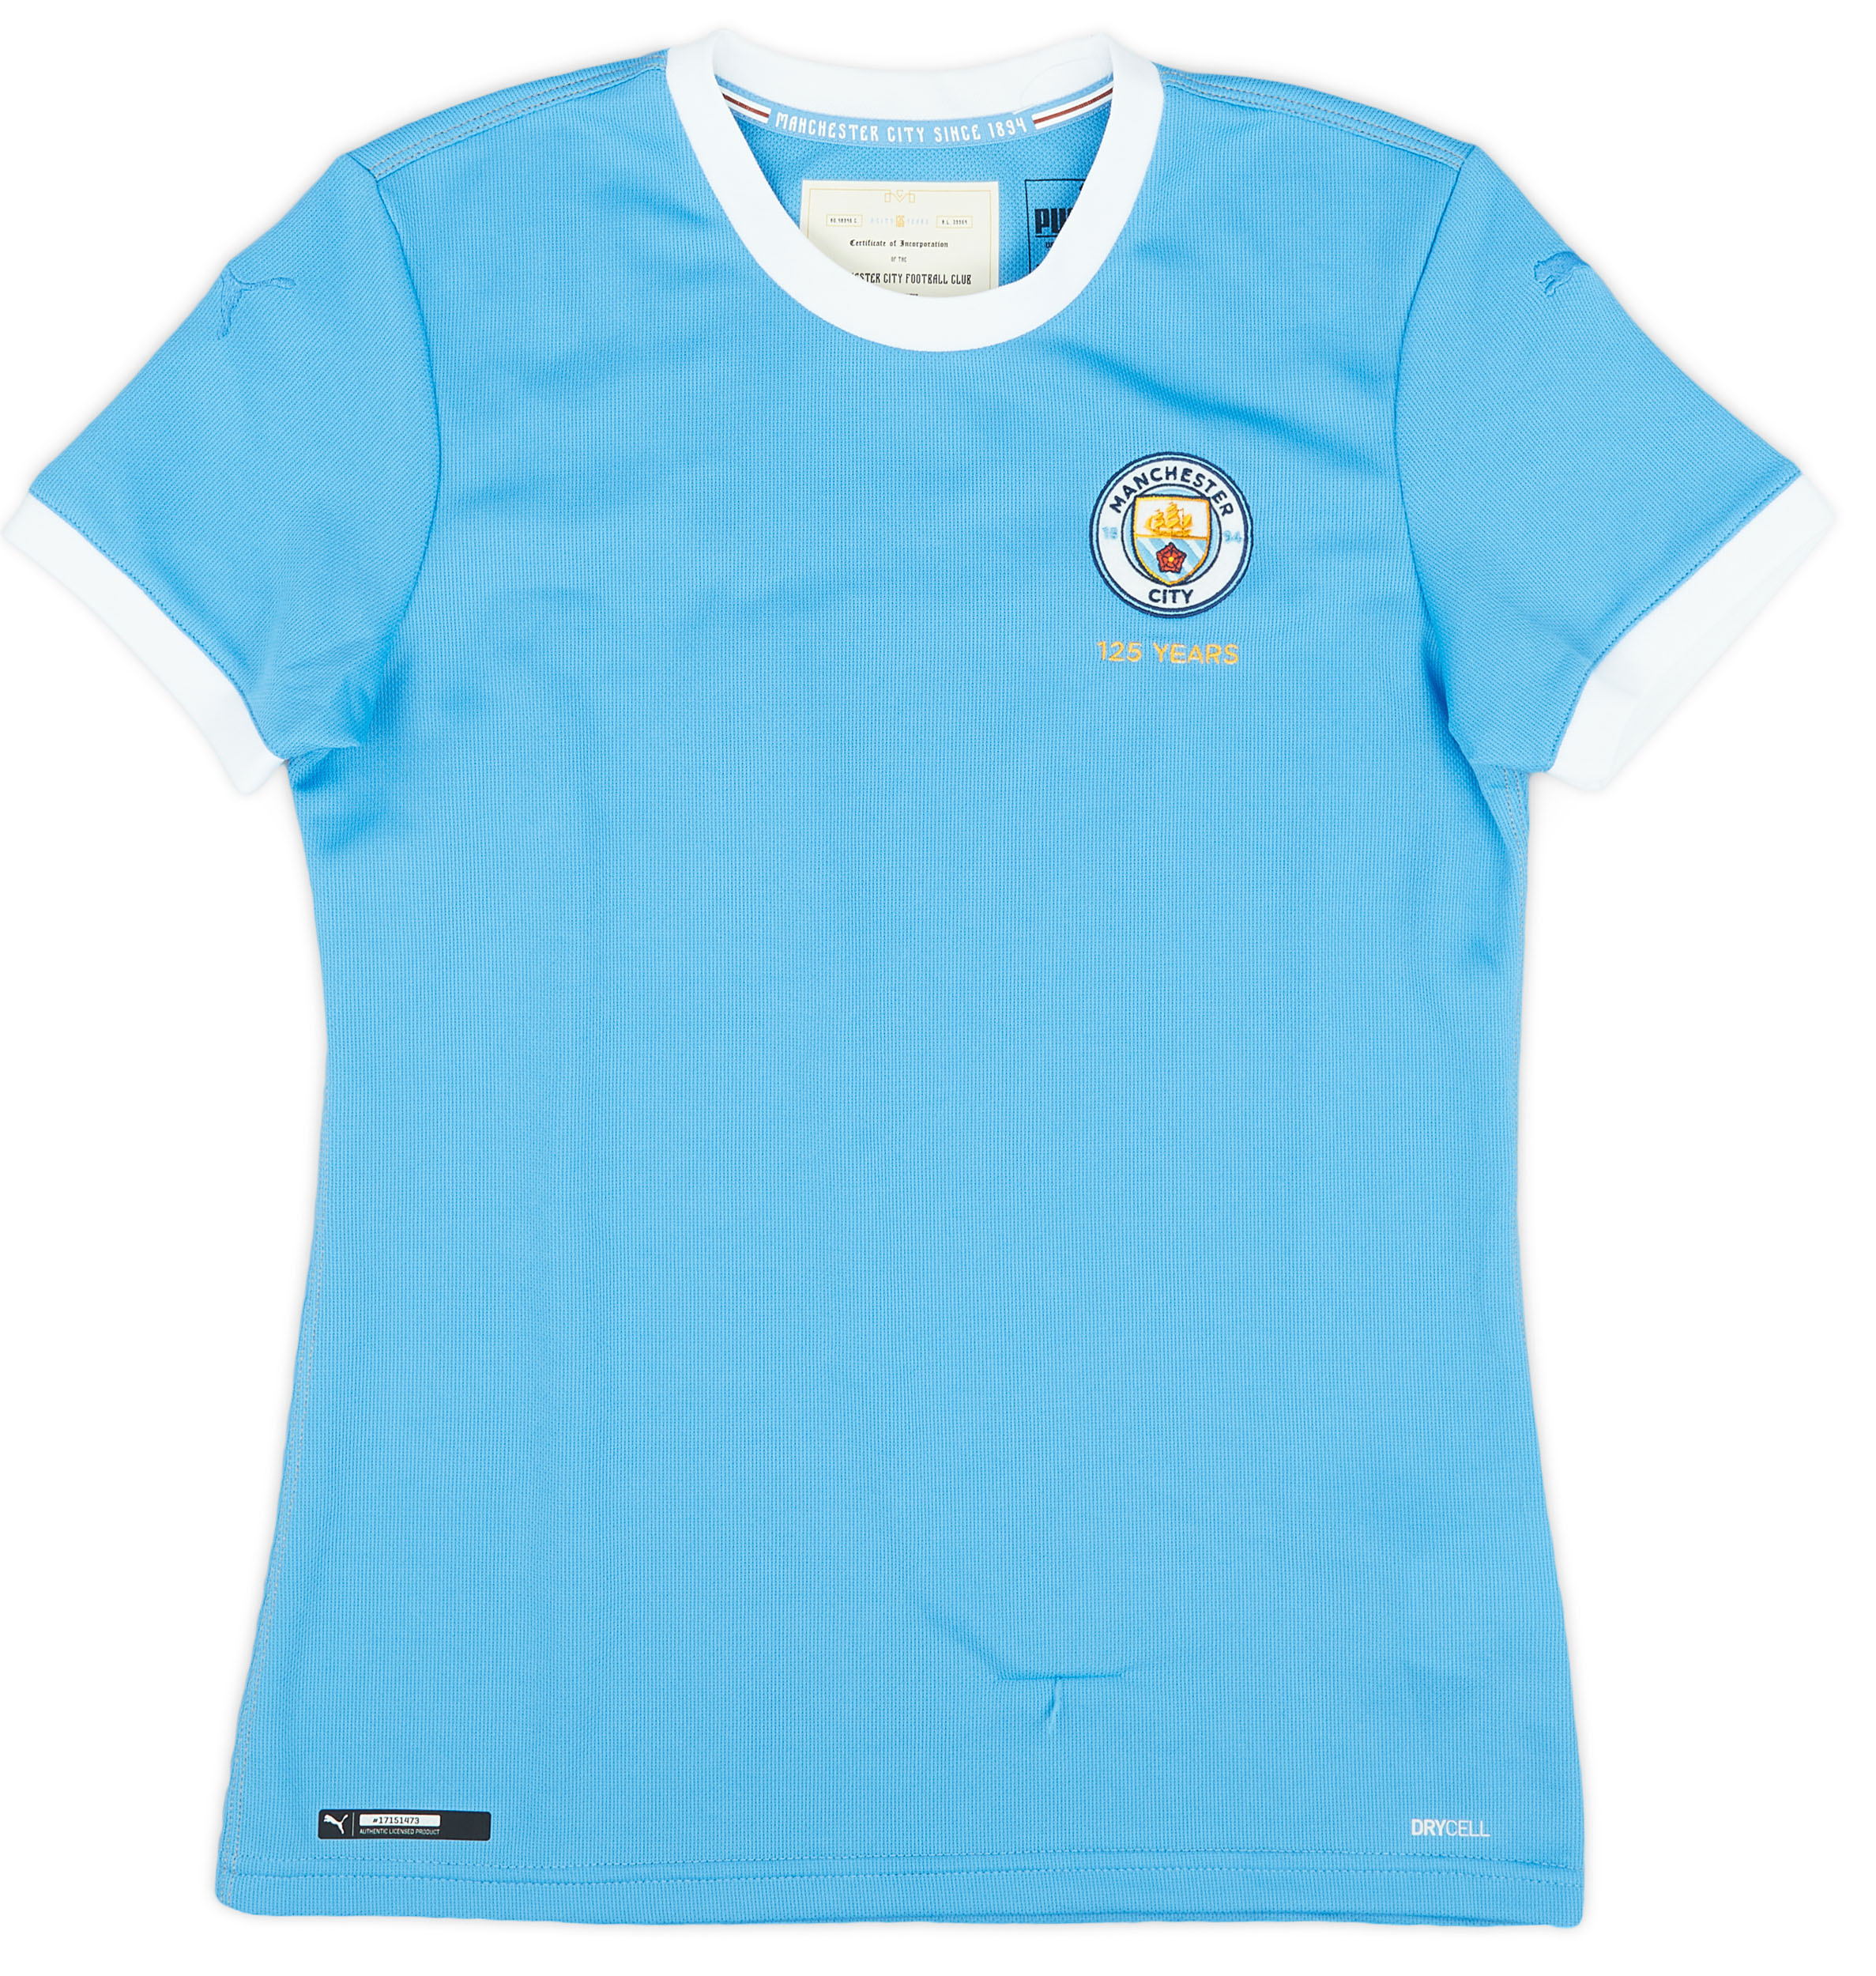 2019-20 Manchester City 125 Years Anniversary Shirt - 5/10 - (Women's )